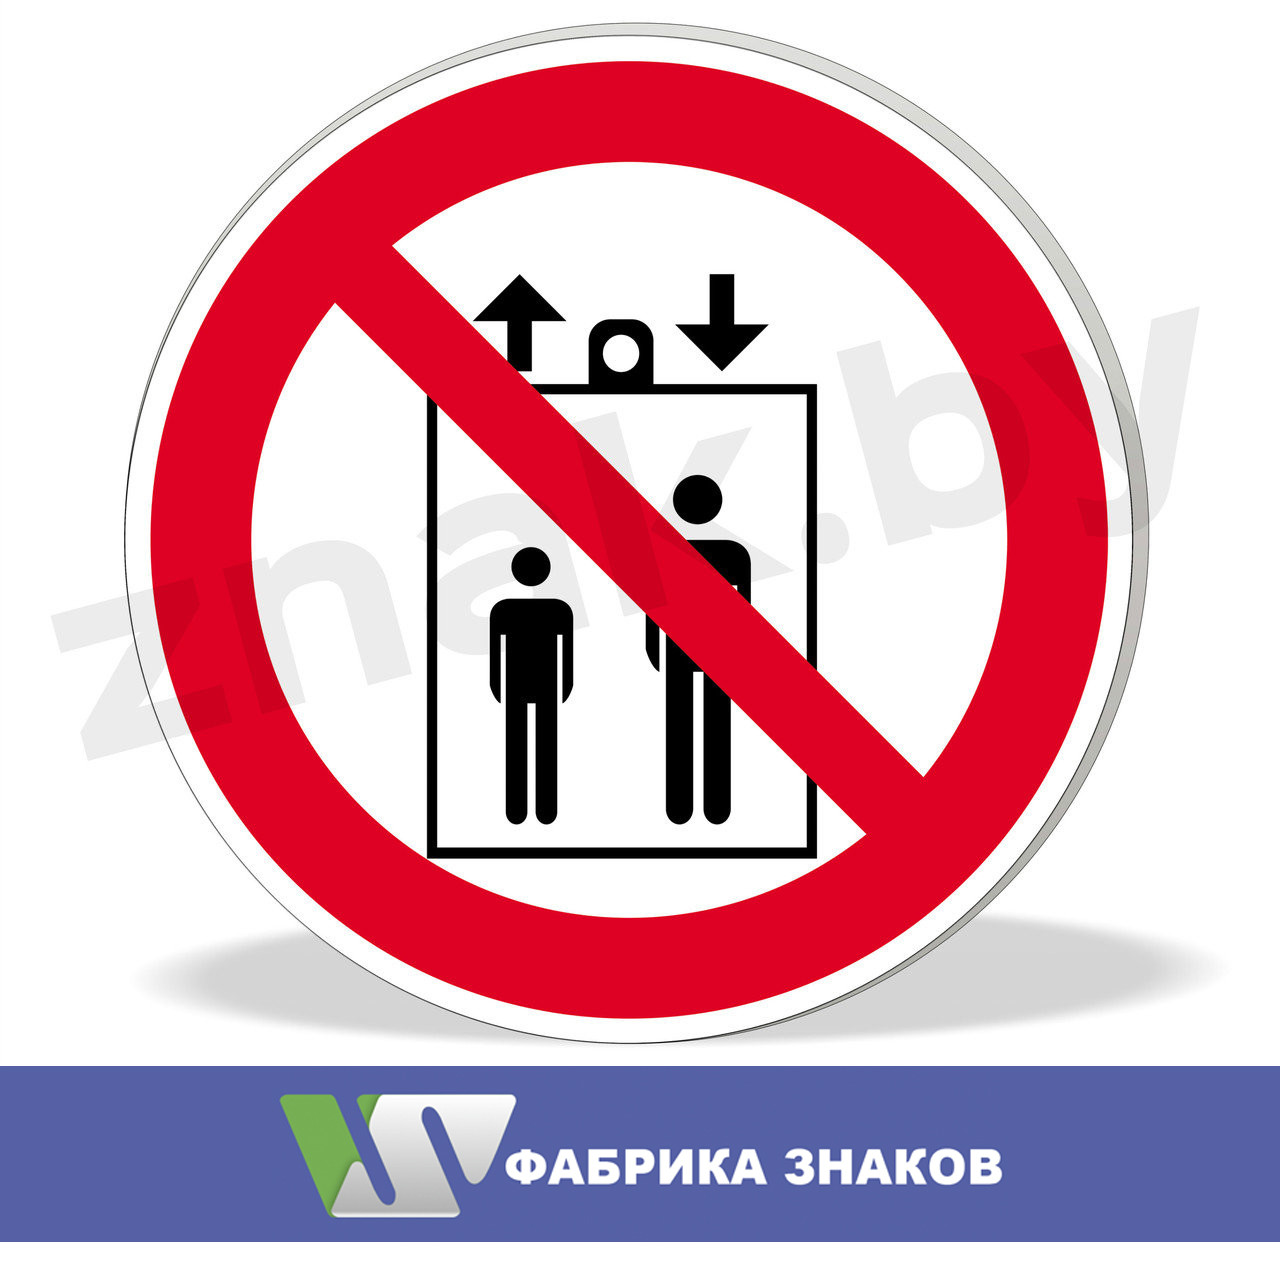 Знак "Запрещается пользоваться лифтом для подъема людей"